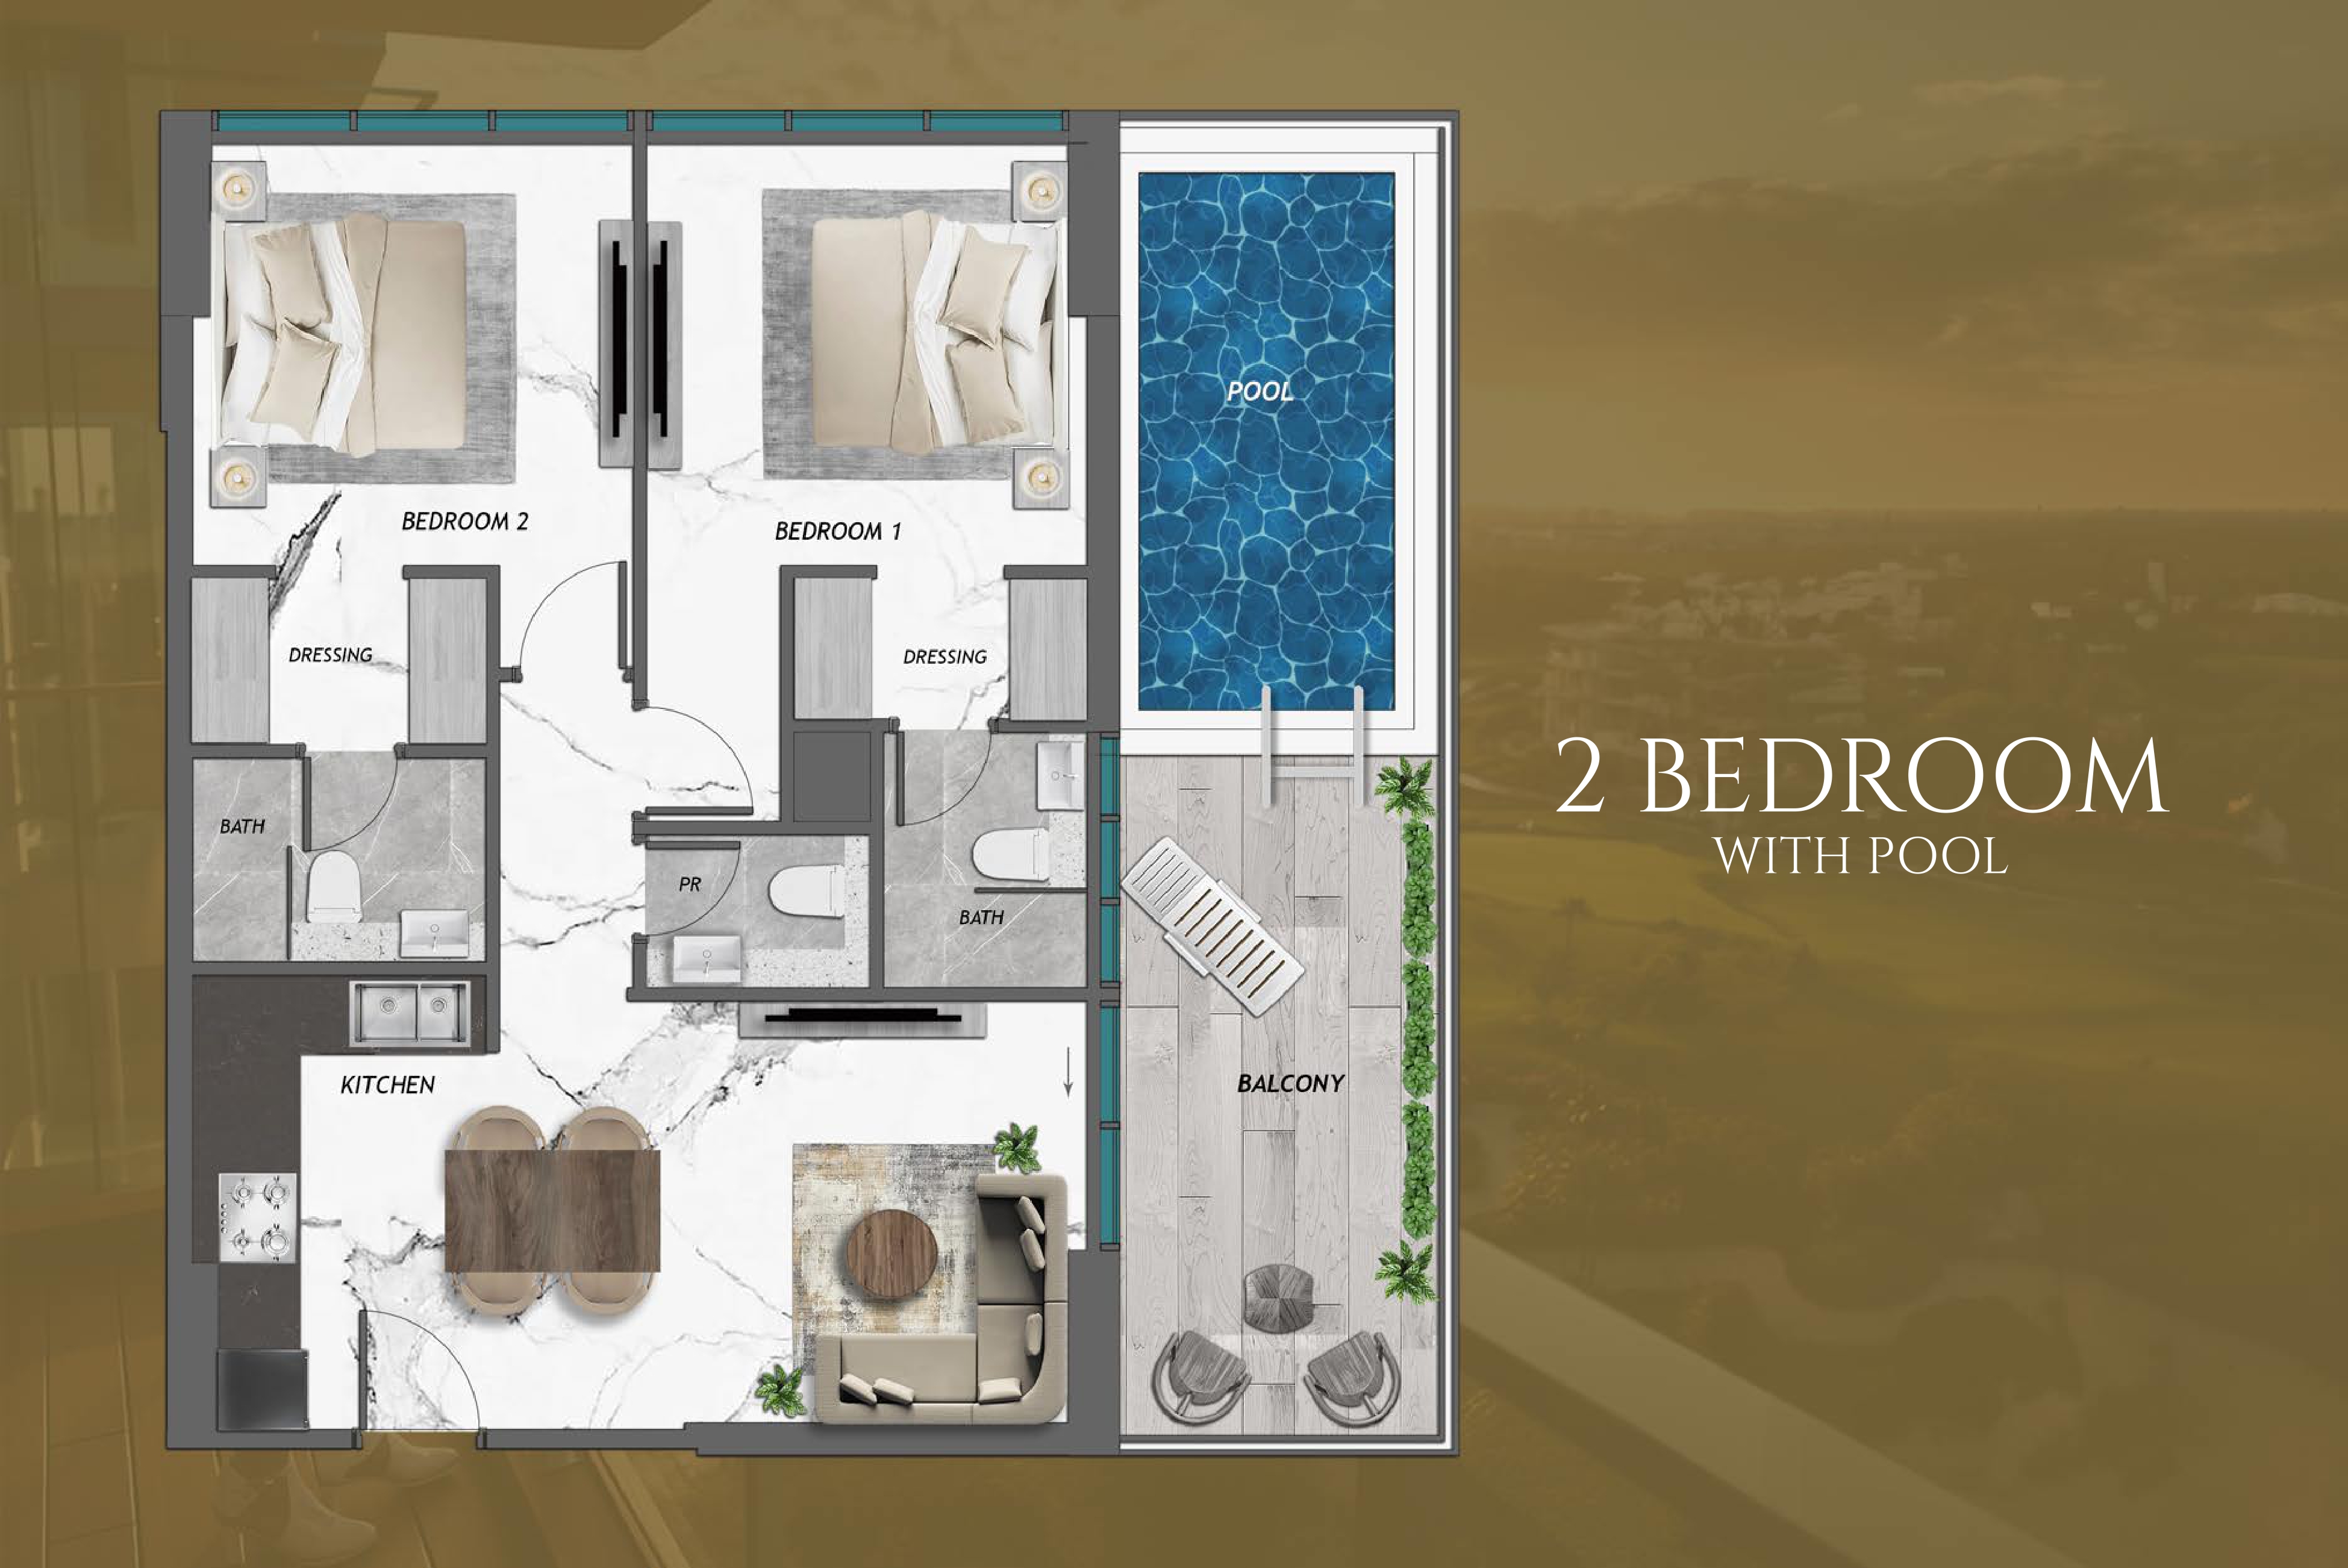 Appartement de luxe à Samana Golf Views : Deux chambres + Piscine | Unité 902 à vendre